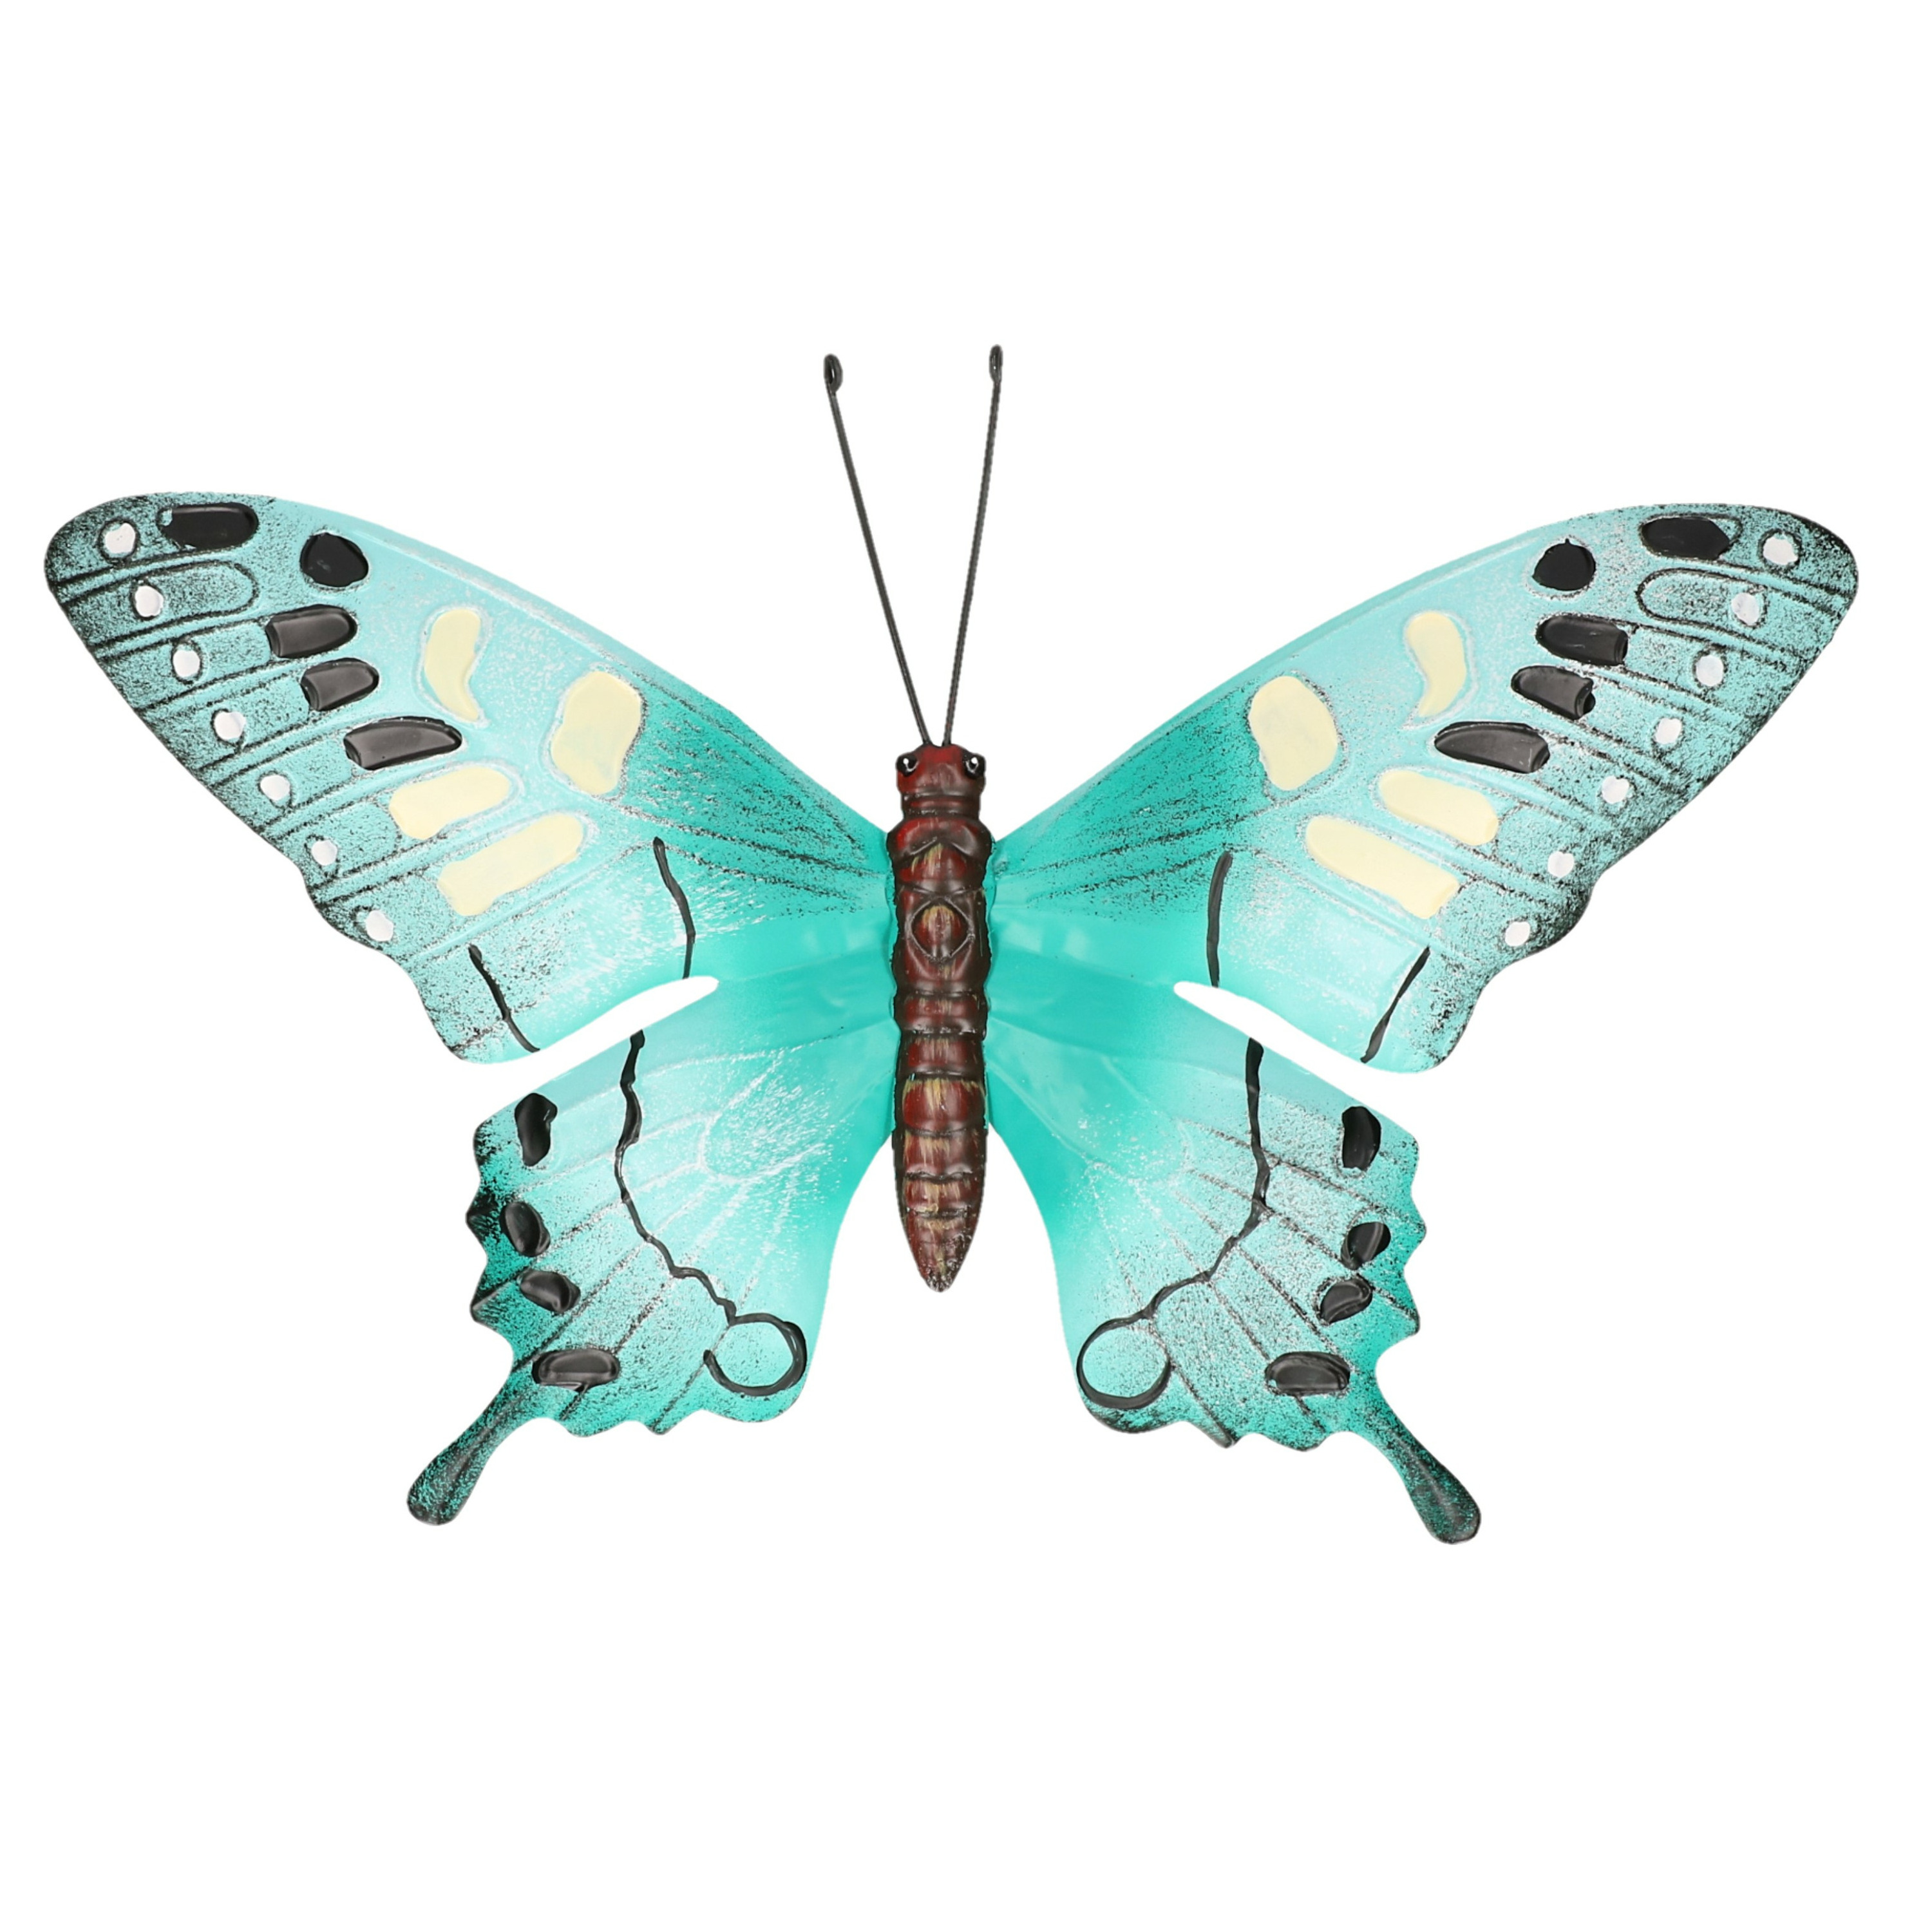 Turquoise blauw-zwarte metalen tuindecoratie vlinder 37 cm